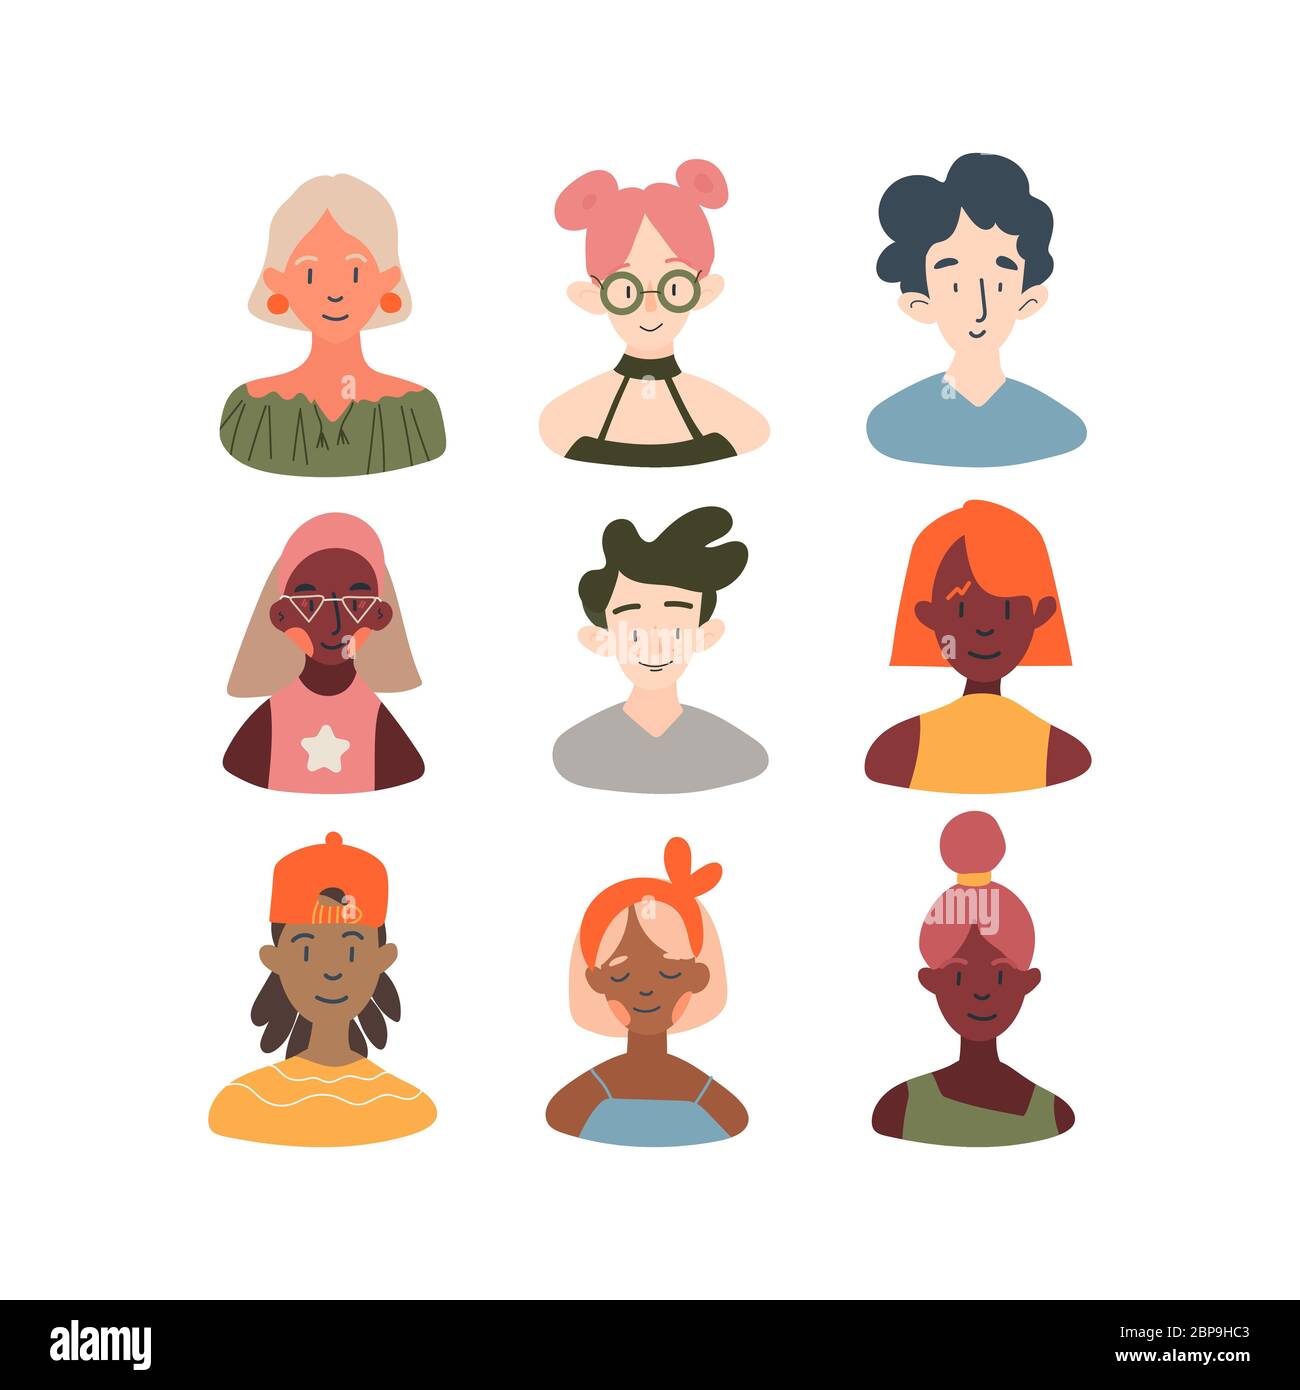 Kinder verschiedener Rassen Profil Avatare Sammlung. Icons von Mädchen und Jungen Gesichter Symbol Vektor-Illustration Set. Moderne Cartoon flache Design. Onli Stock Vektor